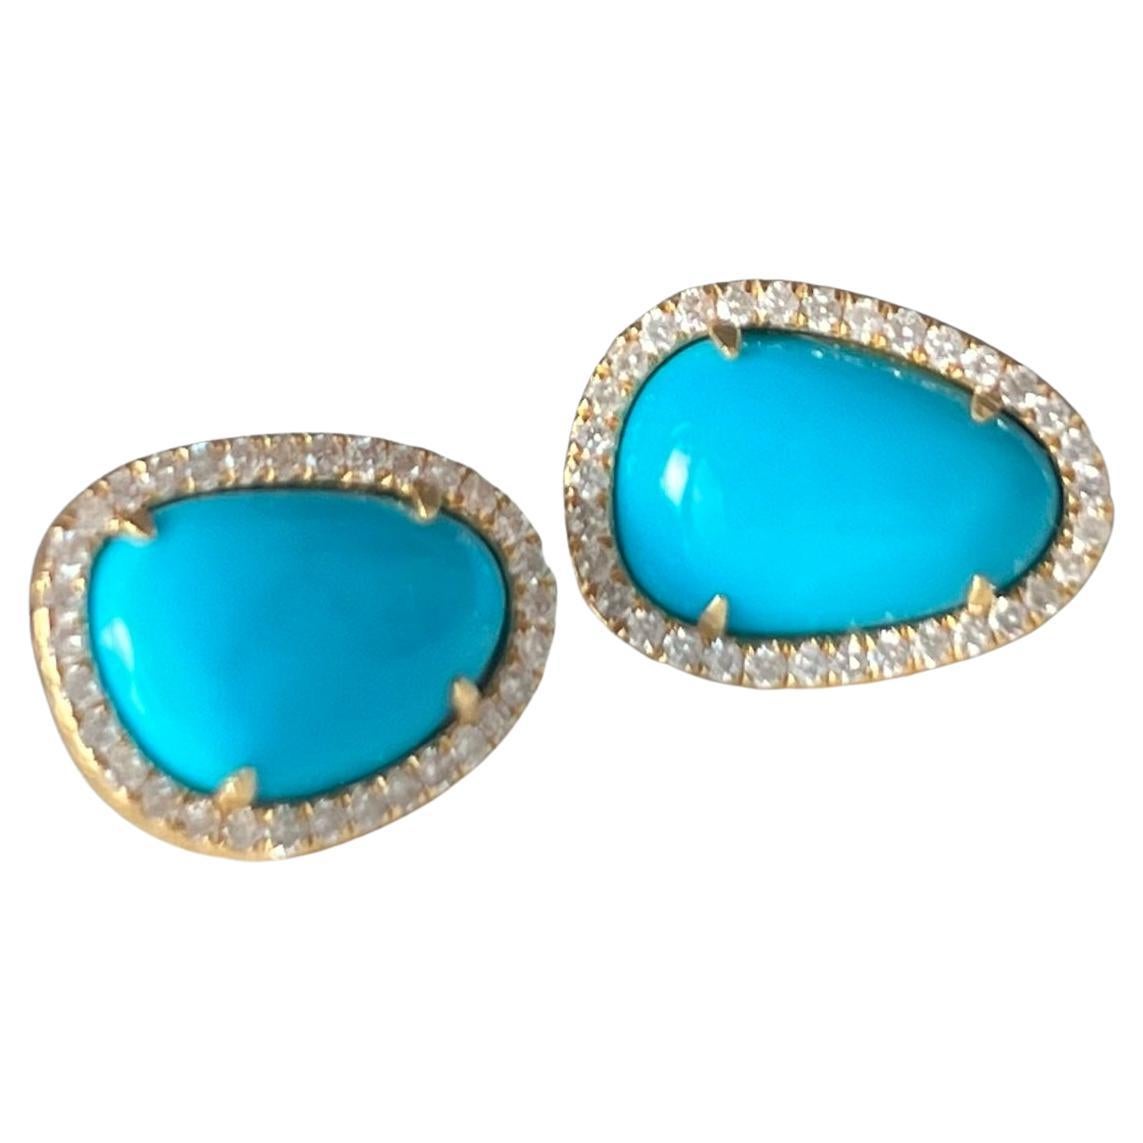 Freeform Turquoise and Diamond Stud Earrings